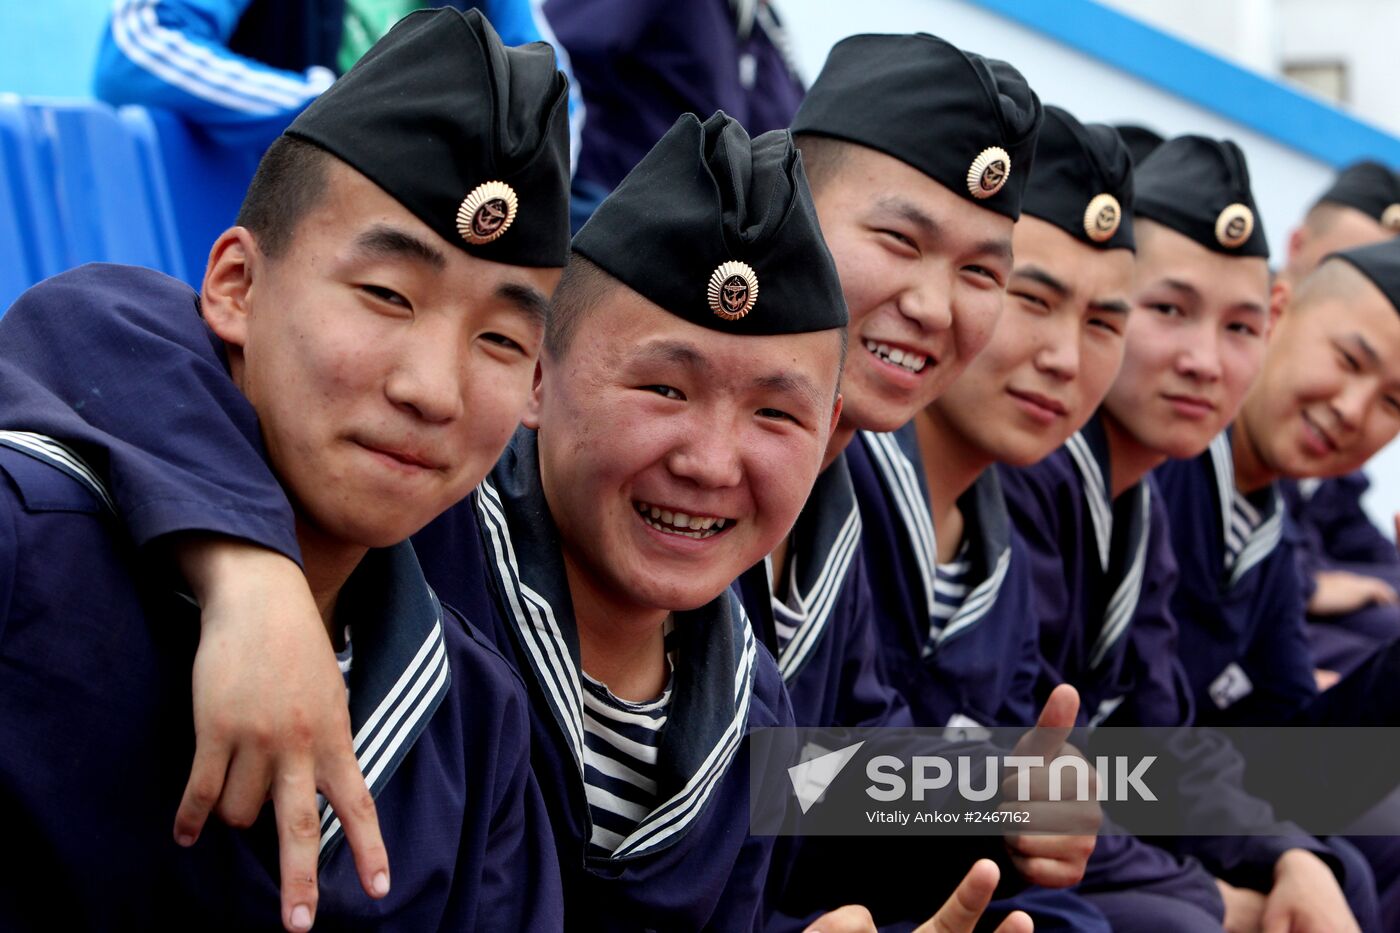 Navy Day celebrations rehearsed in Sevastopol